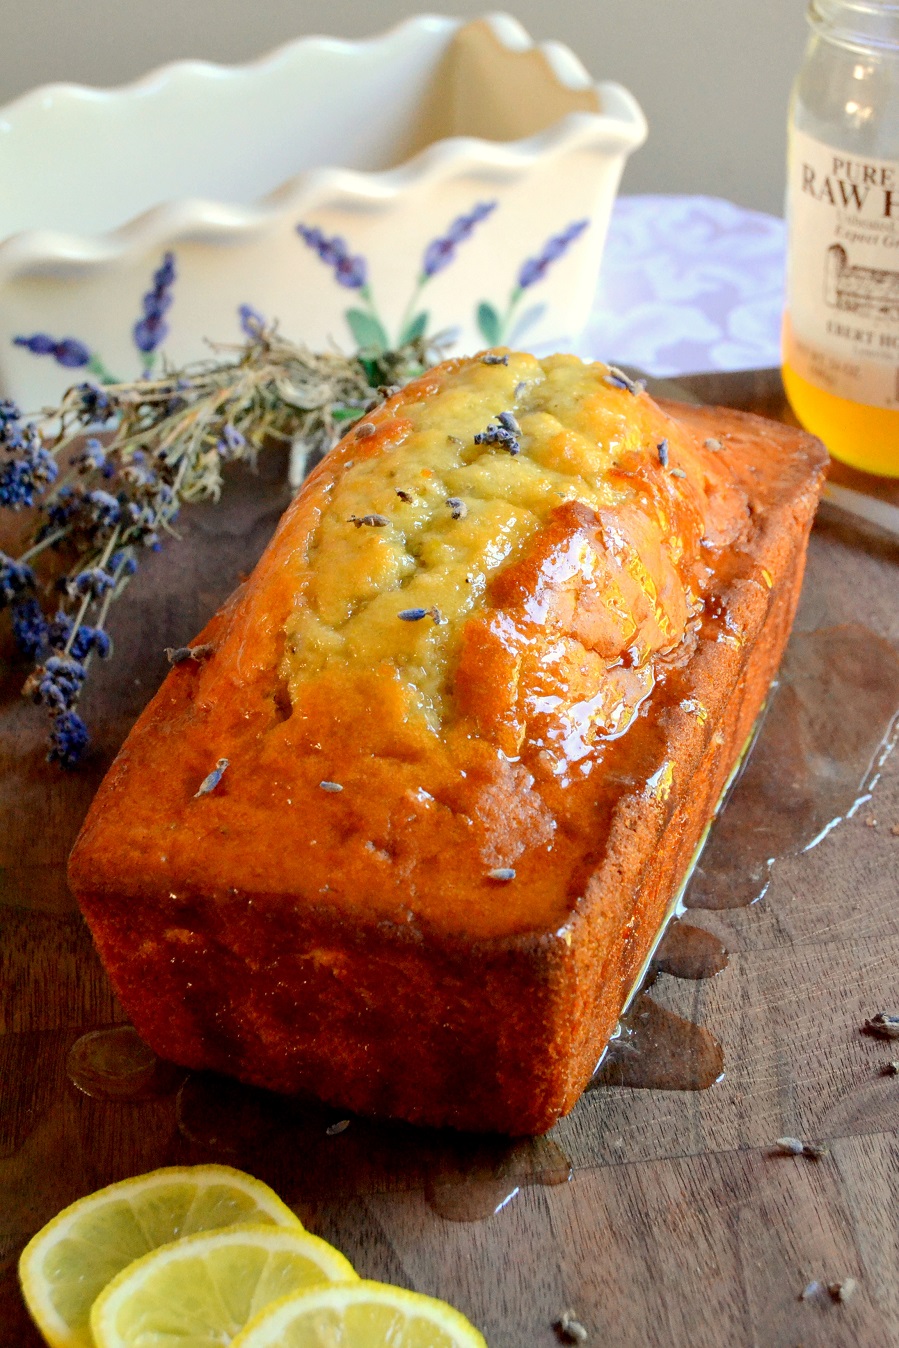 Lemon and Lavender Bread with Honey Lemon Glaze